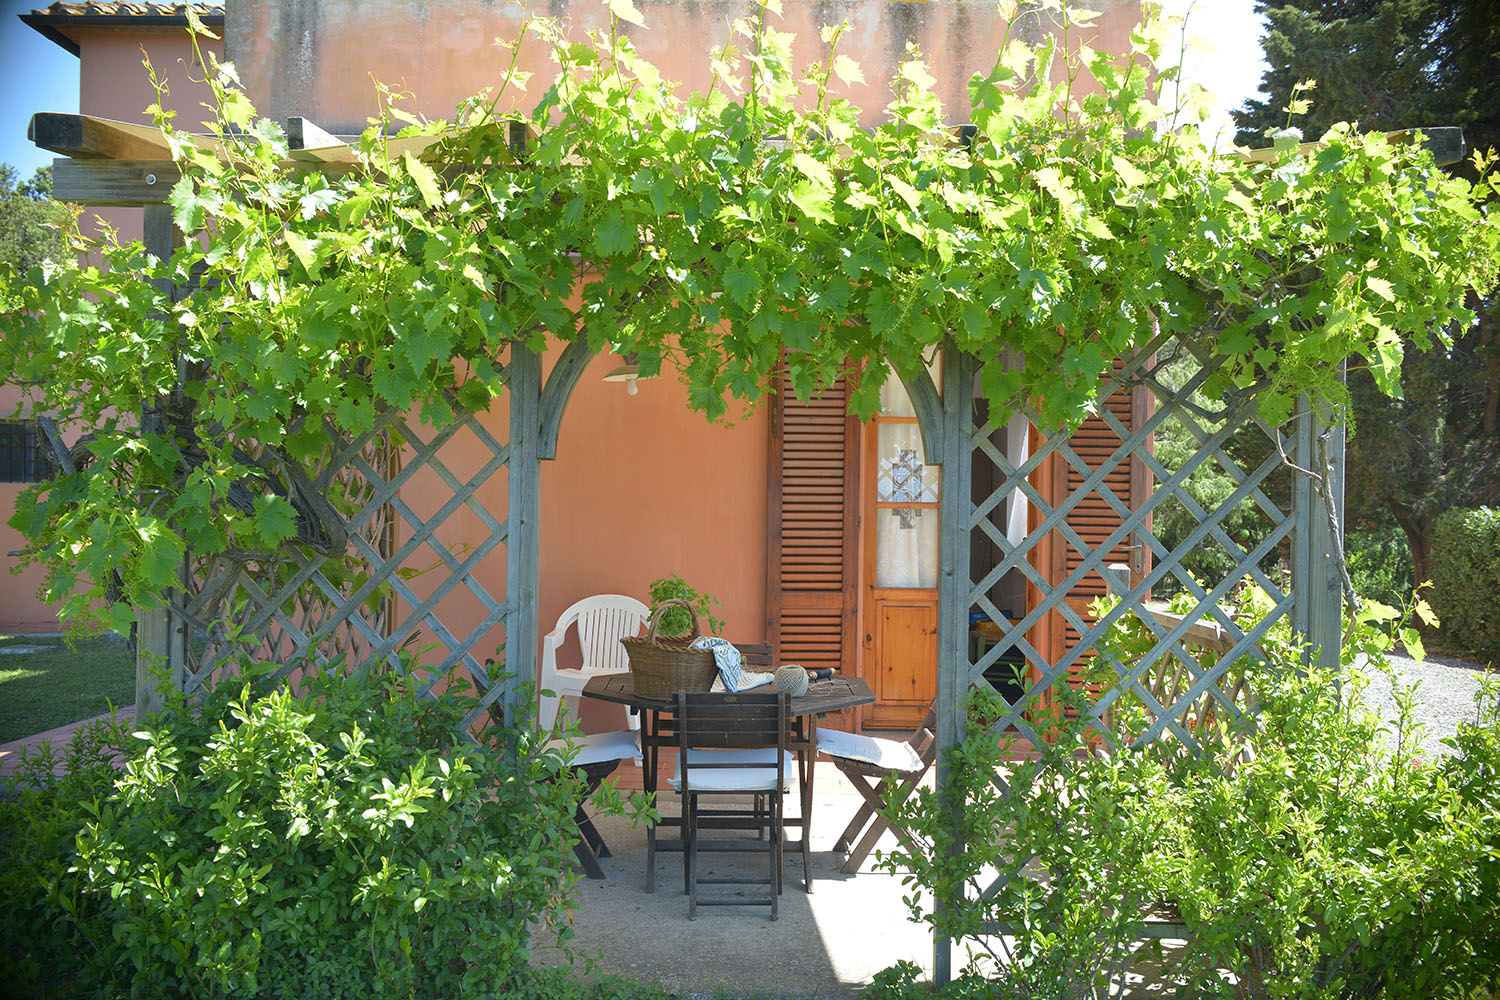 L'appartamento Il Coppaio fa parte dell'Agriturismo.  Situato completamente al piano terra dispone di una veranda esterna arredata, raggiungibile dall'esterno  o direttamente dalla cucina.